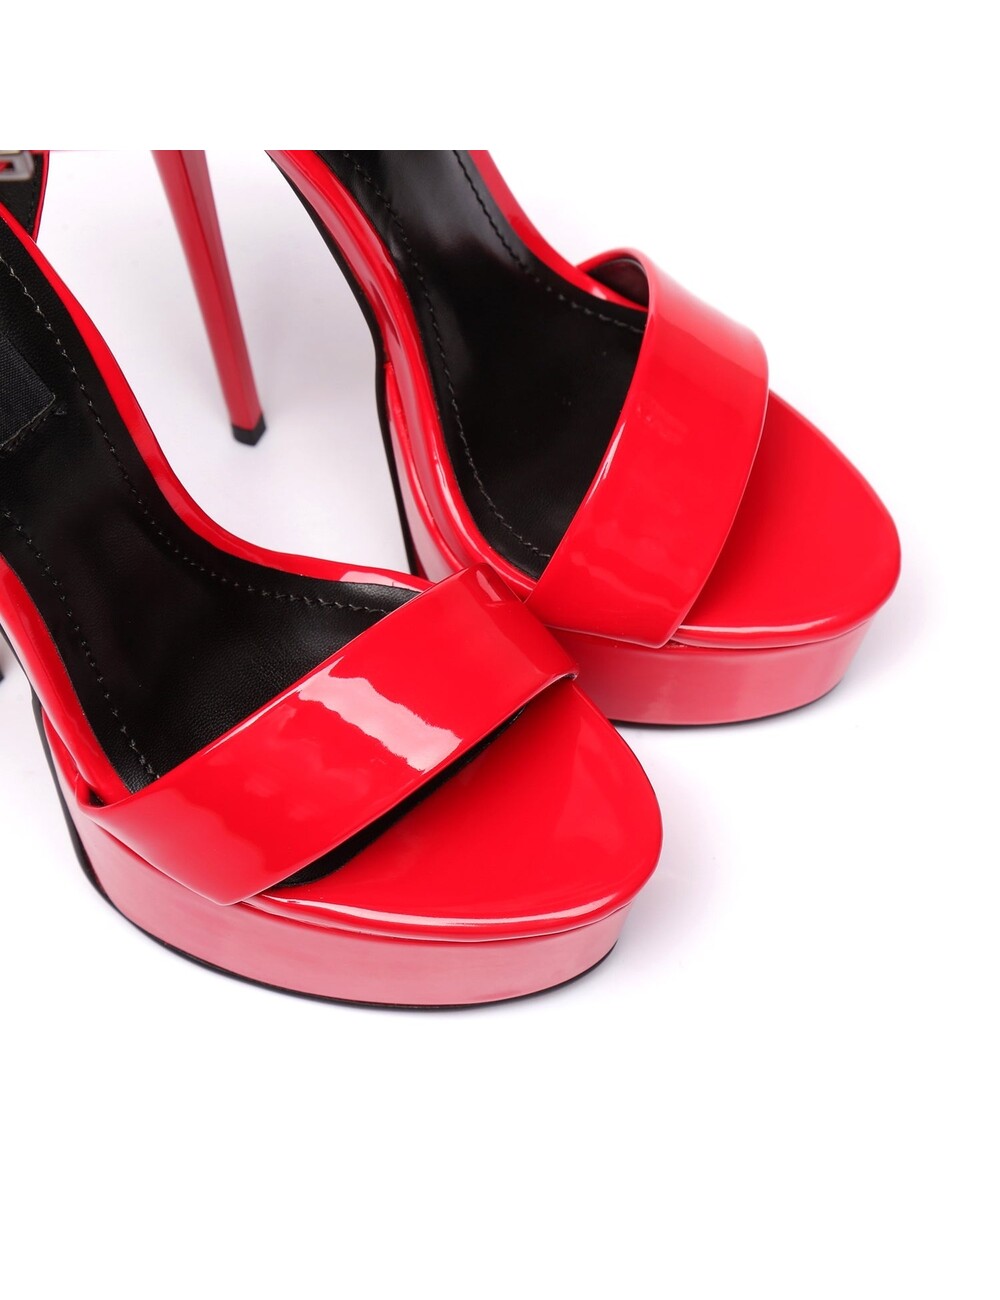 Giaro Red shiny Giaro "Galana" sandals